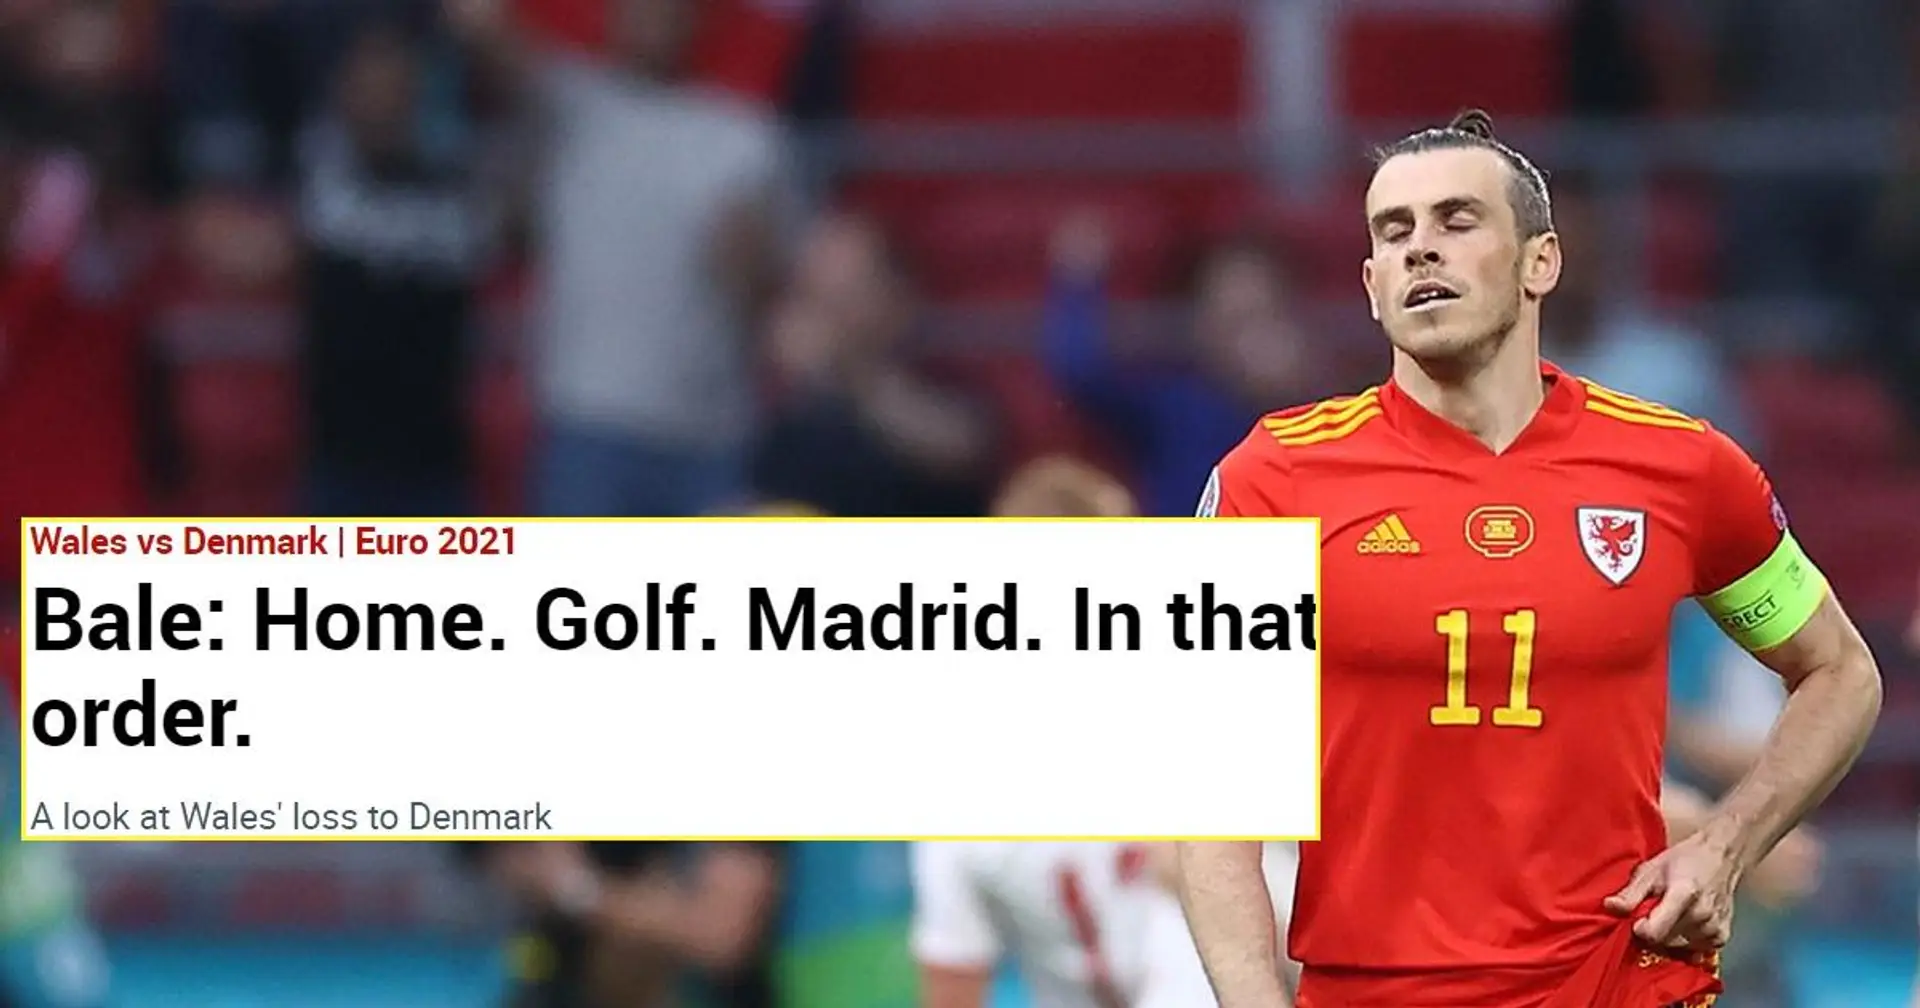 "Vous devriez avoir honte": les fans de Madrid furieux contre Marca pour le titre scandaleux sur Bale après la défaite contre Danemark